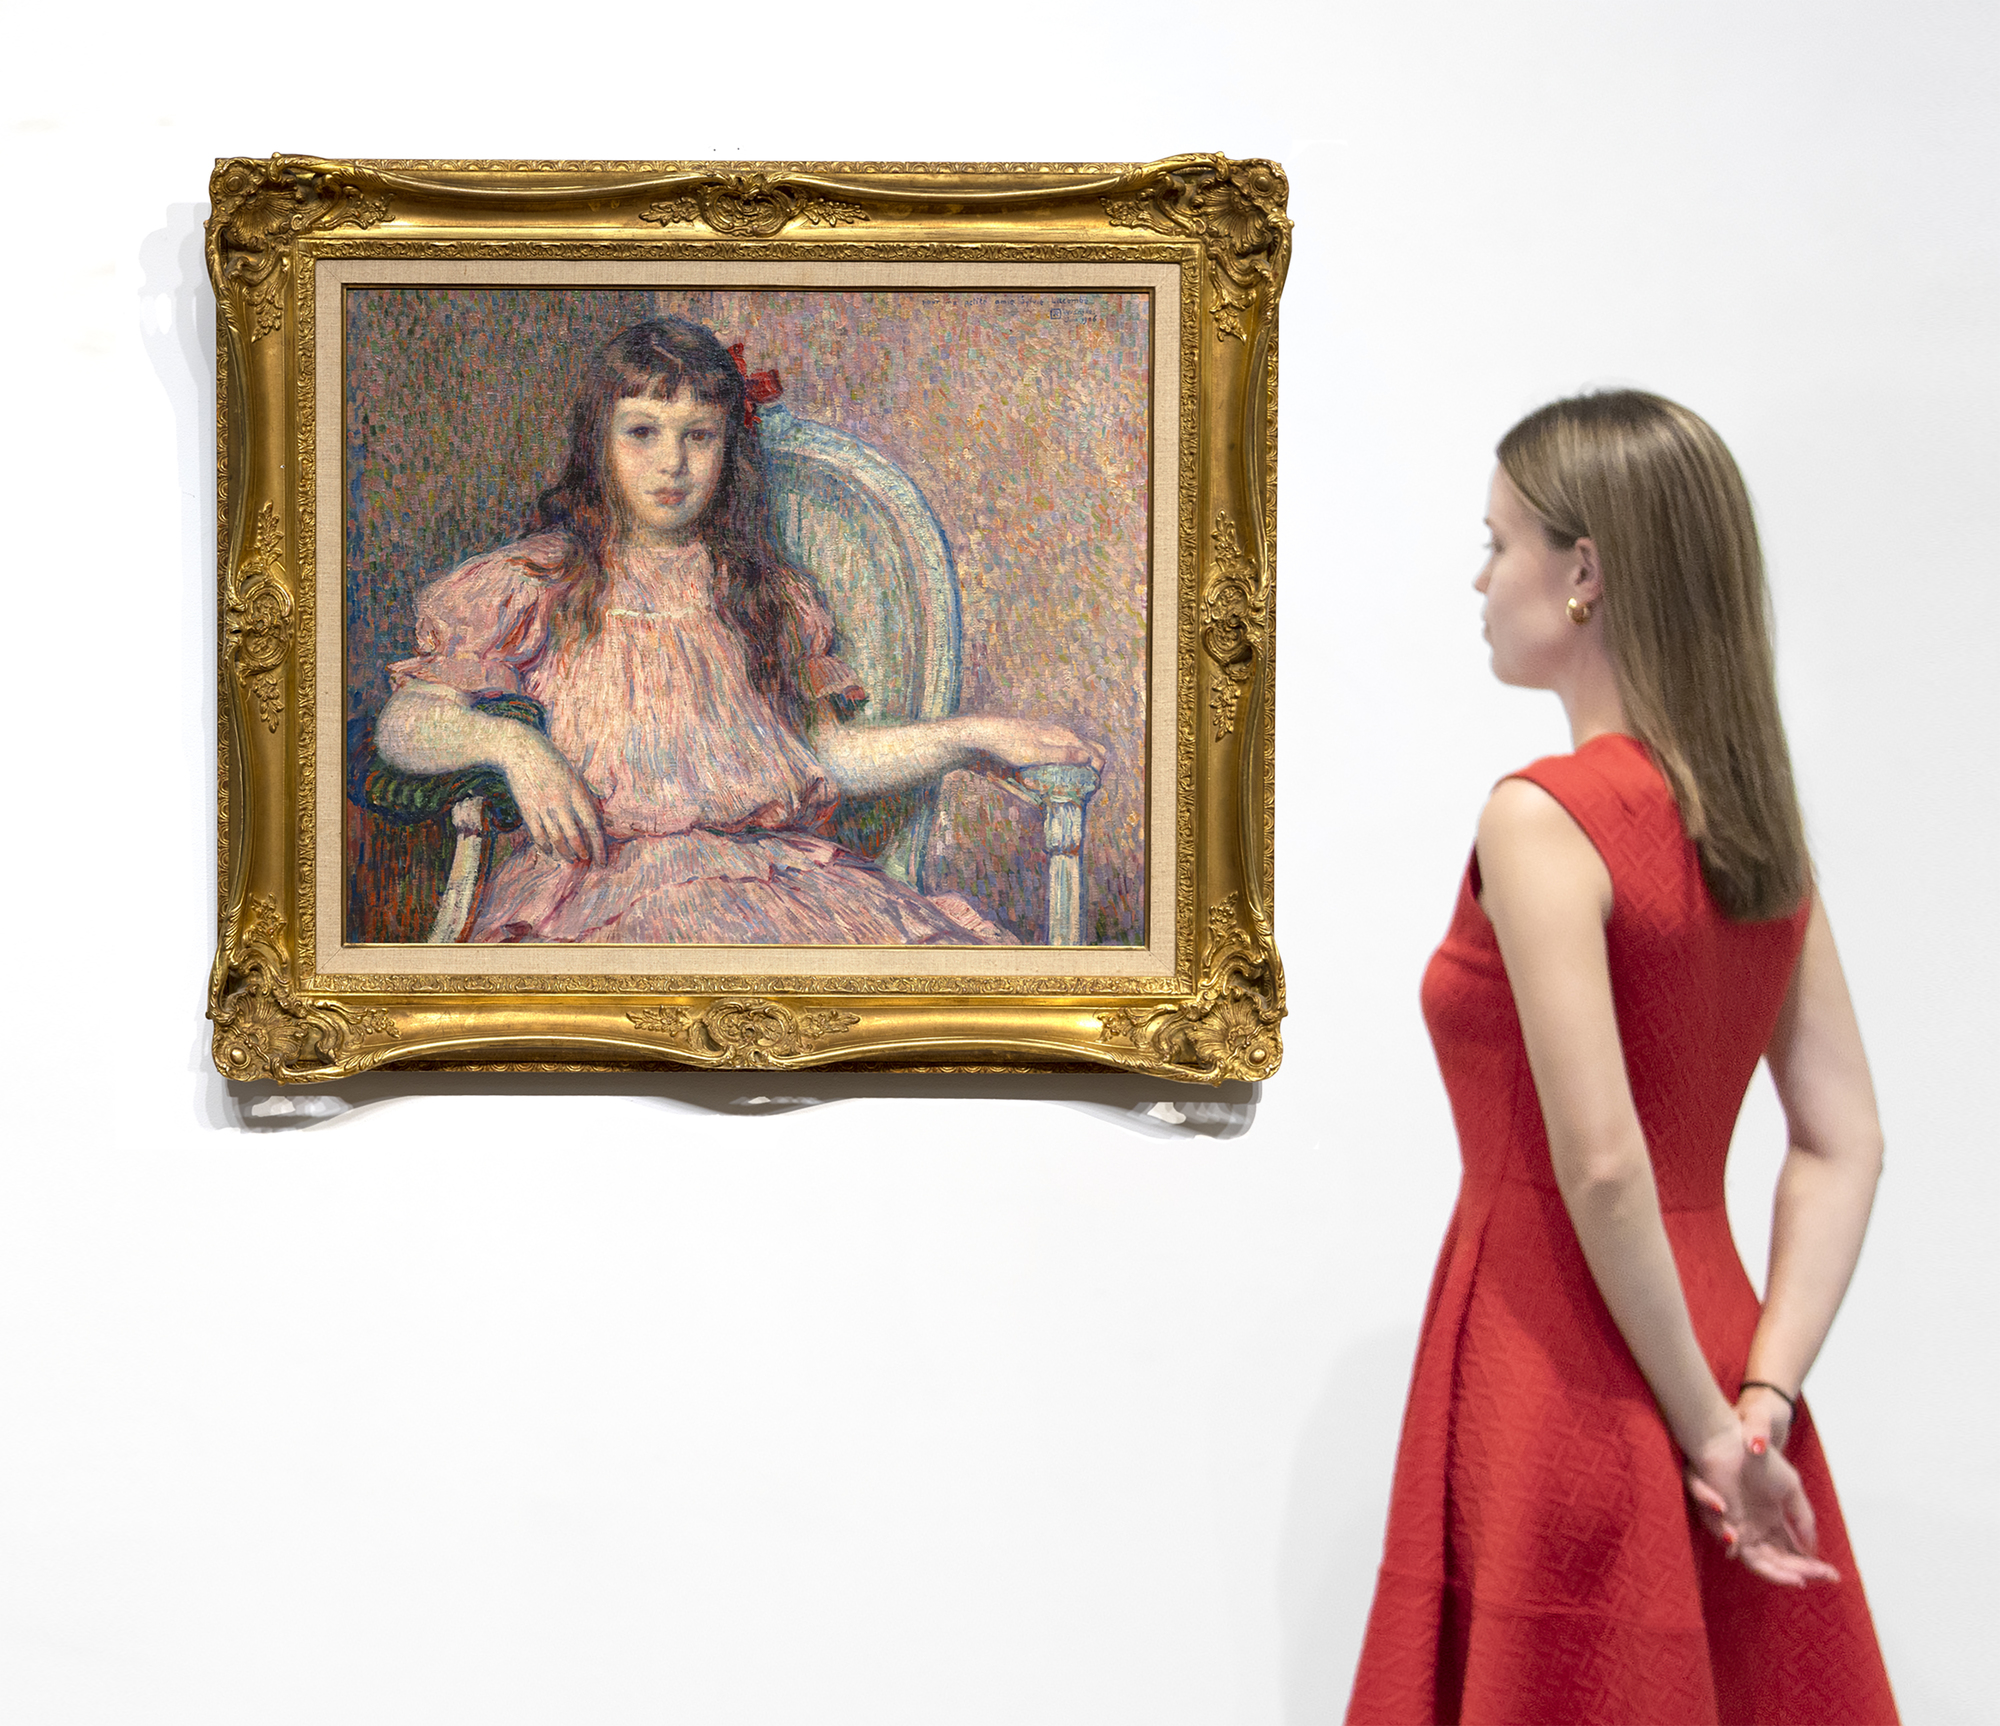 El Retrato de Sylvie Lacombe de Théo van Rysselberghe, pintado en 1906, es una obra maestra clásica de uno de los retratistas más refinados y coherentes de su época. El color es armonioso, la pincelada vigorosa y adaptada a su tarea material, su cuerpo y su semblante verdaderos y reveladores. La modelo es la hija de su buen amigo, el pintor Georges Lacombe, que compartió una estrecha asociación con Gauguin y fue miembro de Les Nabis con los artistas Bonnard, Denis y Vuillard, entre otros. Ahora conocemos a Sylvie Lacombe porque Van Rysselberghe es muy hábil en la representación de sutiles expresiones faciales y, a través de una cuidadosa observación y atención al detalle, nos ha proporcionado una visión de su mundo interior. Ha elegido una mirada directa, sus ojos a los tuyos, un pacto ineludible entre sujeto y espectador independientemente de nuestra relación física con el cuadro. Van Rysselberghe había abandonado en gran medida la técnica puntillista cuando pintó este retrato. Sin embargo, siguió aplicando las directrices de la teoría del color, utilizando tintes rojos -rosas y malvas- frente a verdes para crear una armoniosa paleta ameliorada de colores complementarios a la que añadió un fuerte acento para atraer la mirada: un lazo rojo intensamente saturado colocado asimétricamente a un lado de la cabeza.